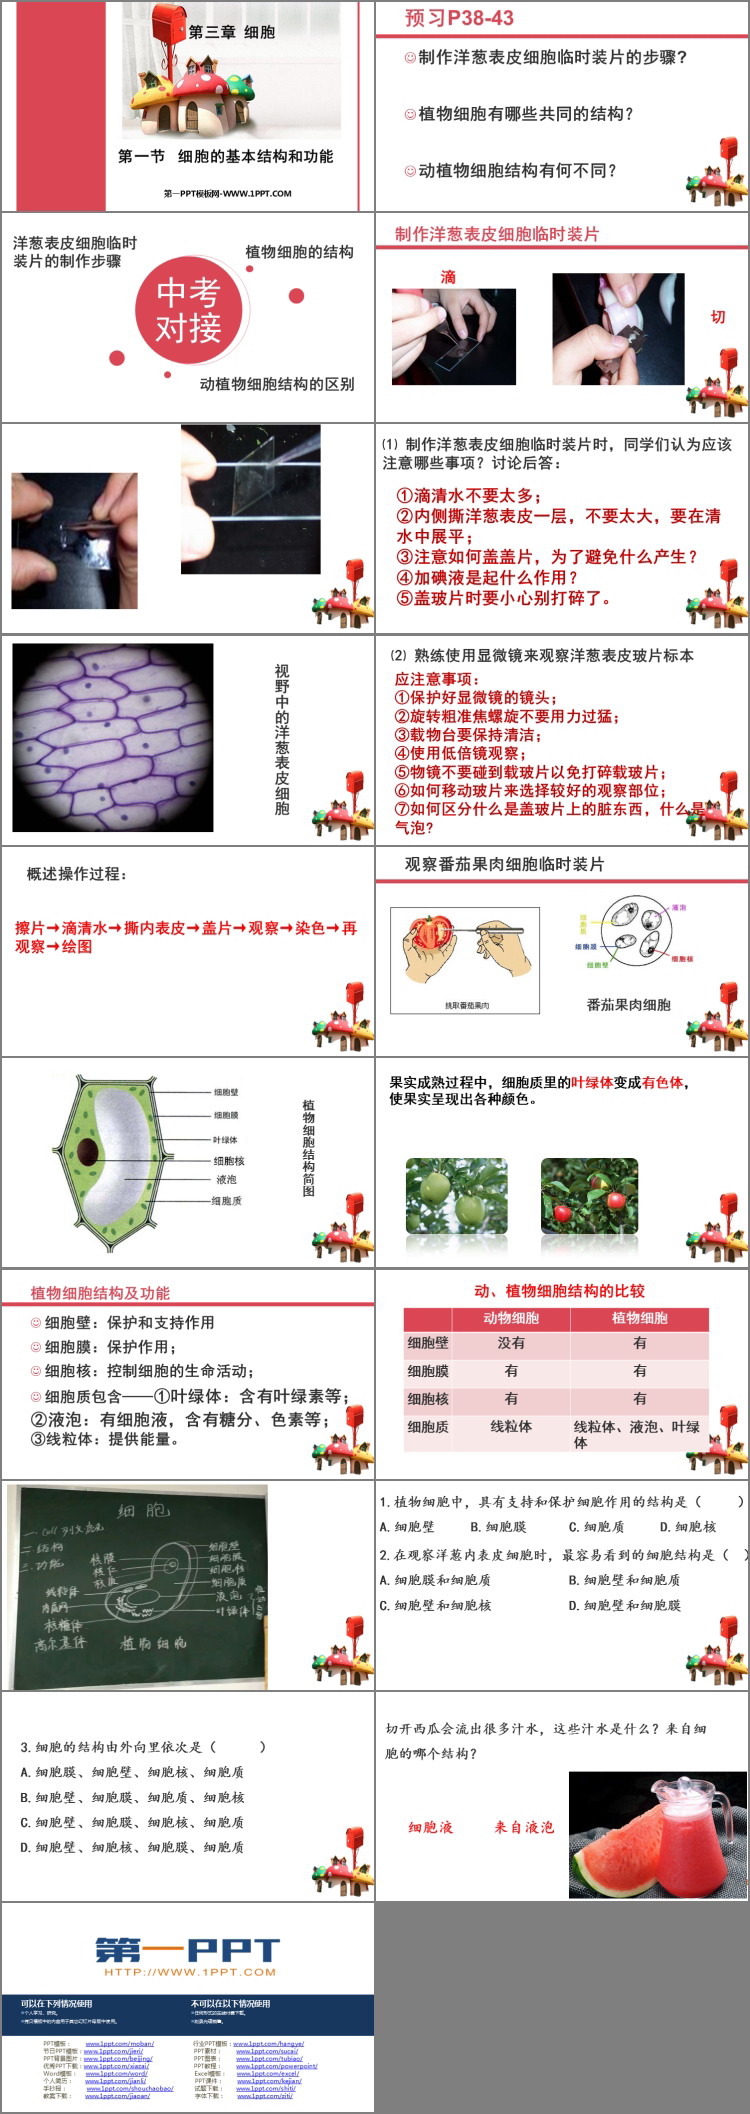 《细胞的基本结构和功能》PPT教学课件